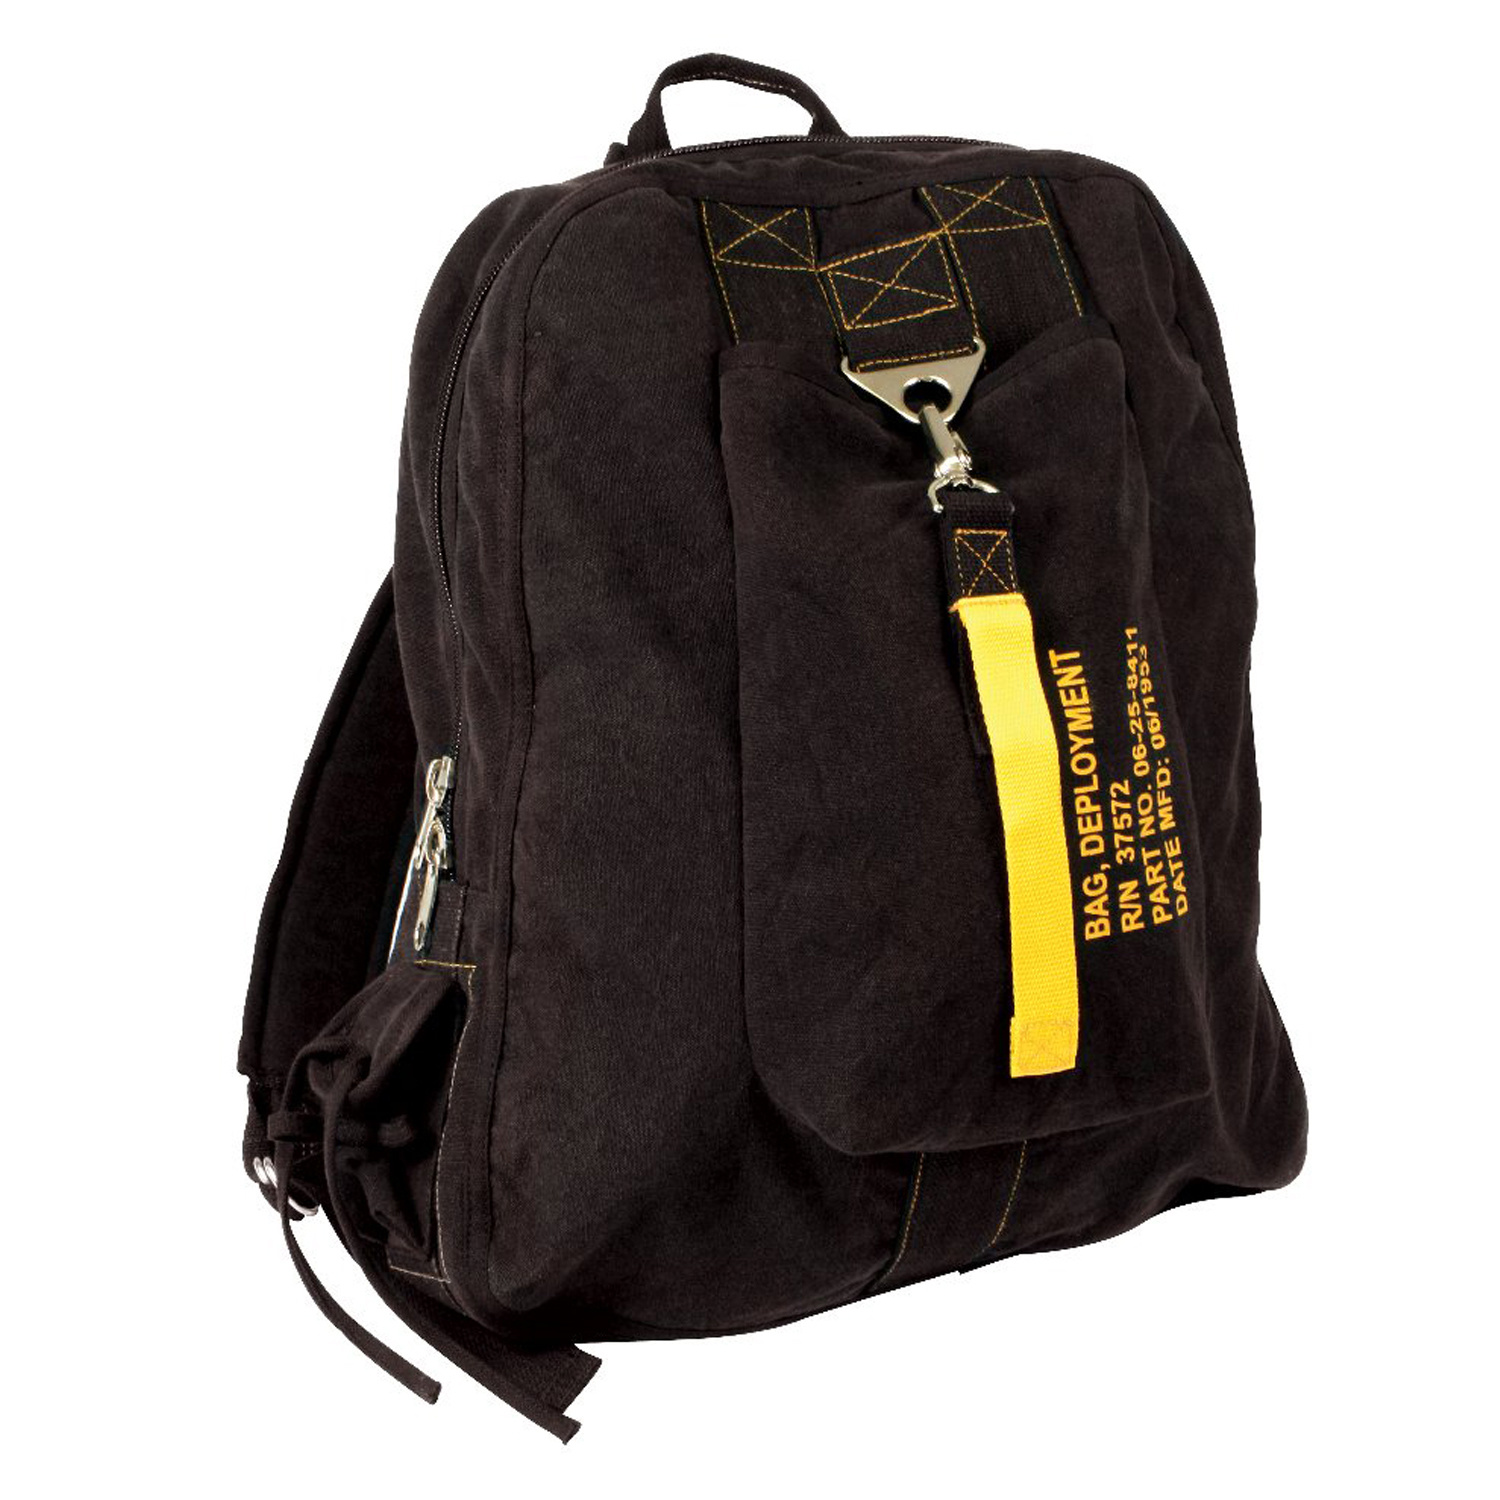 Flight bag. Rothco Vintage Bag. Rothco Vintage Backpack. Рюкзак пилот. Рюкзак летчика.